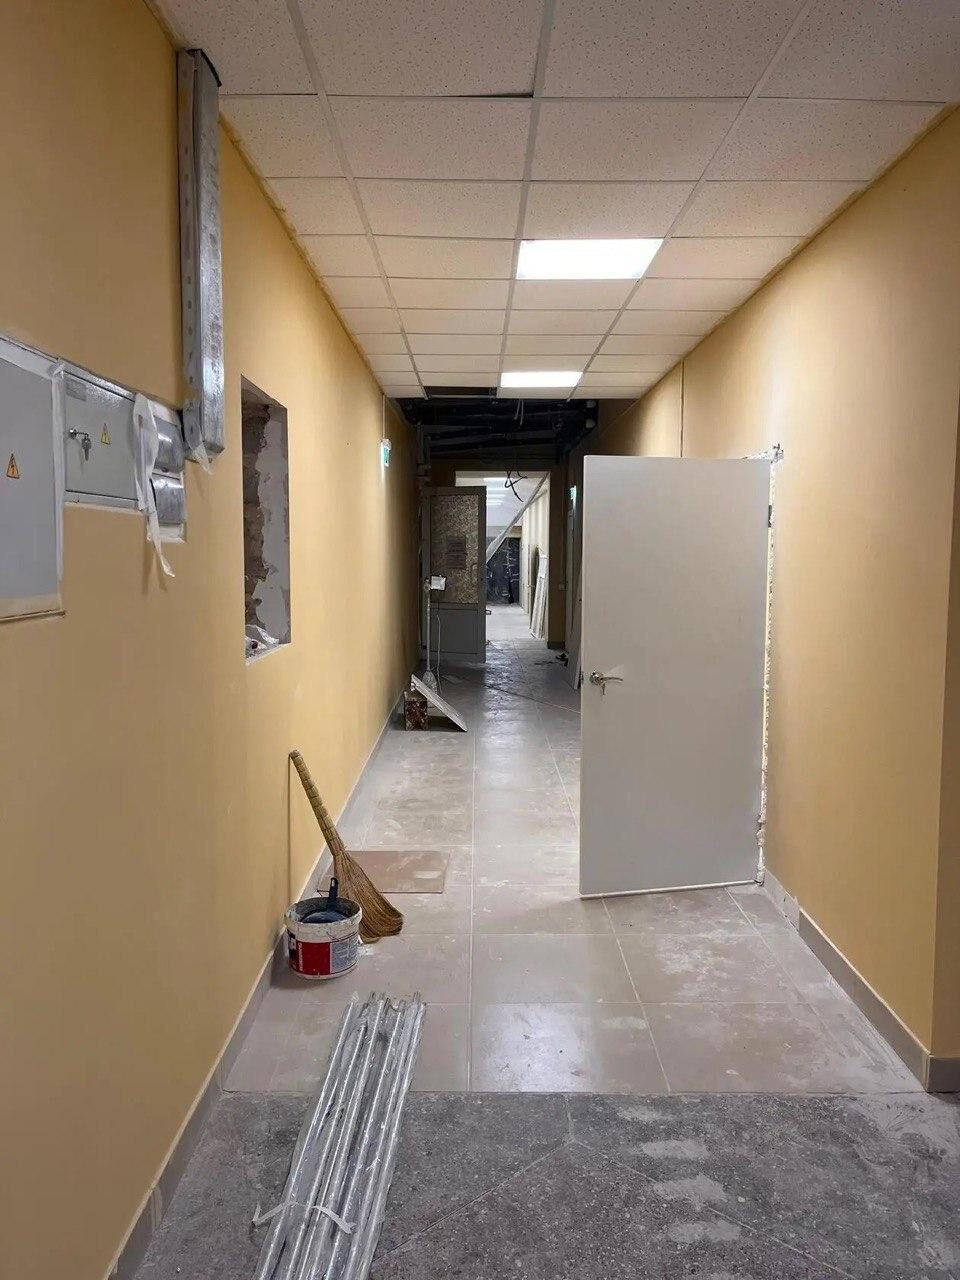 Специалисты Самарской области завершают реконструкцию Центра первичной медико-санитарной помощи в Снежном.